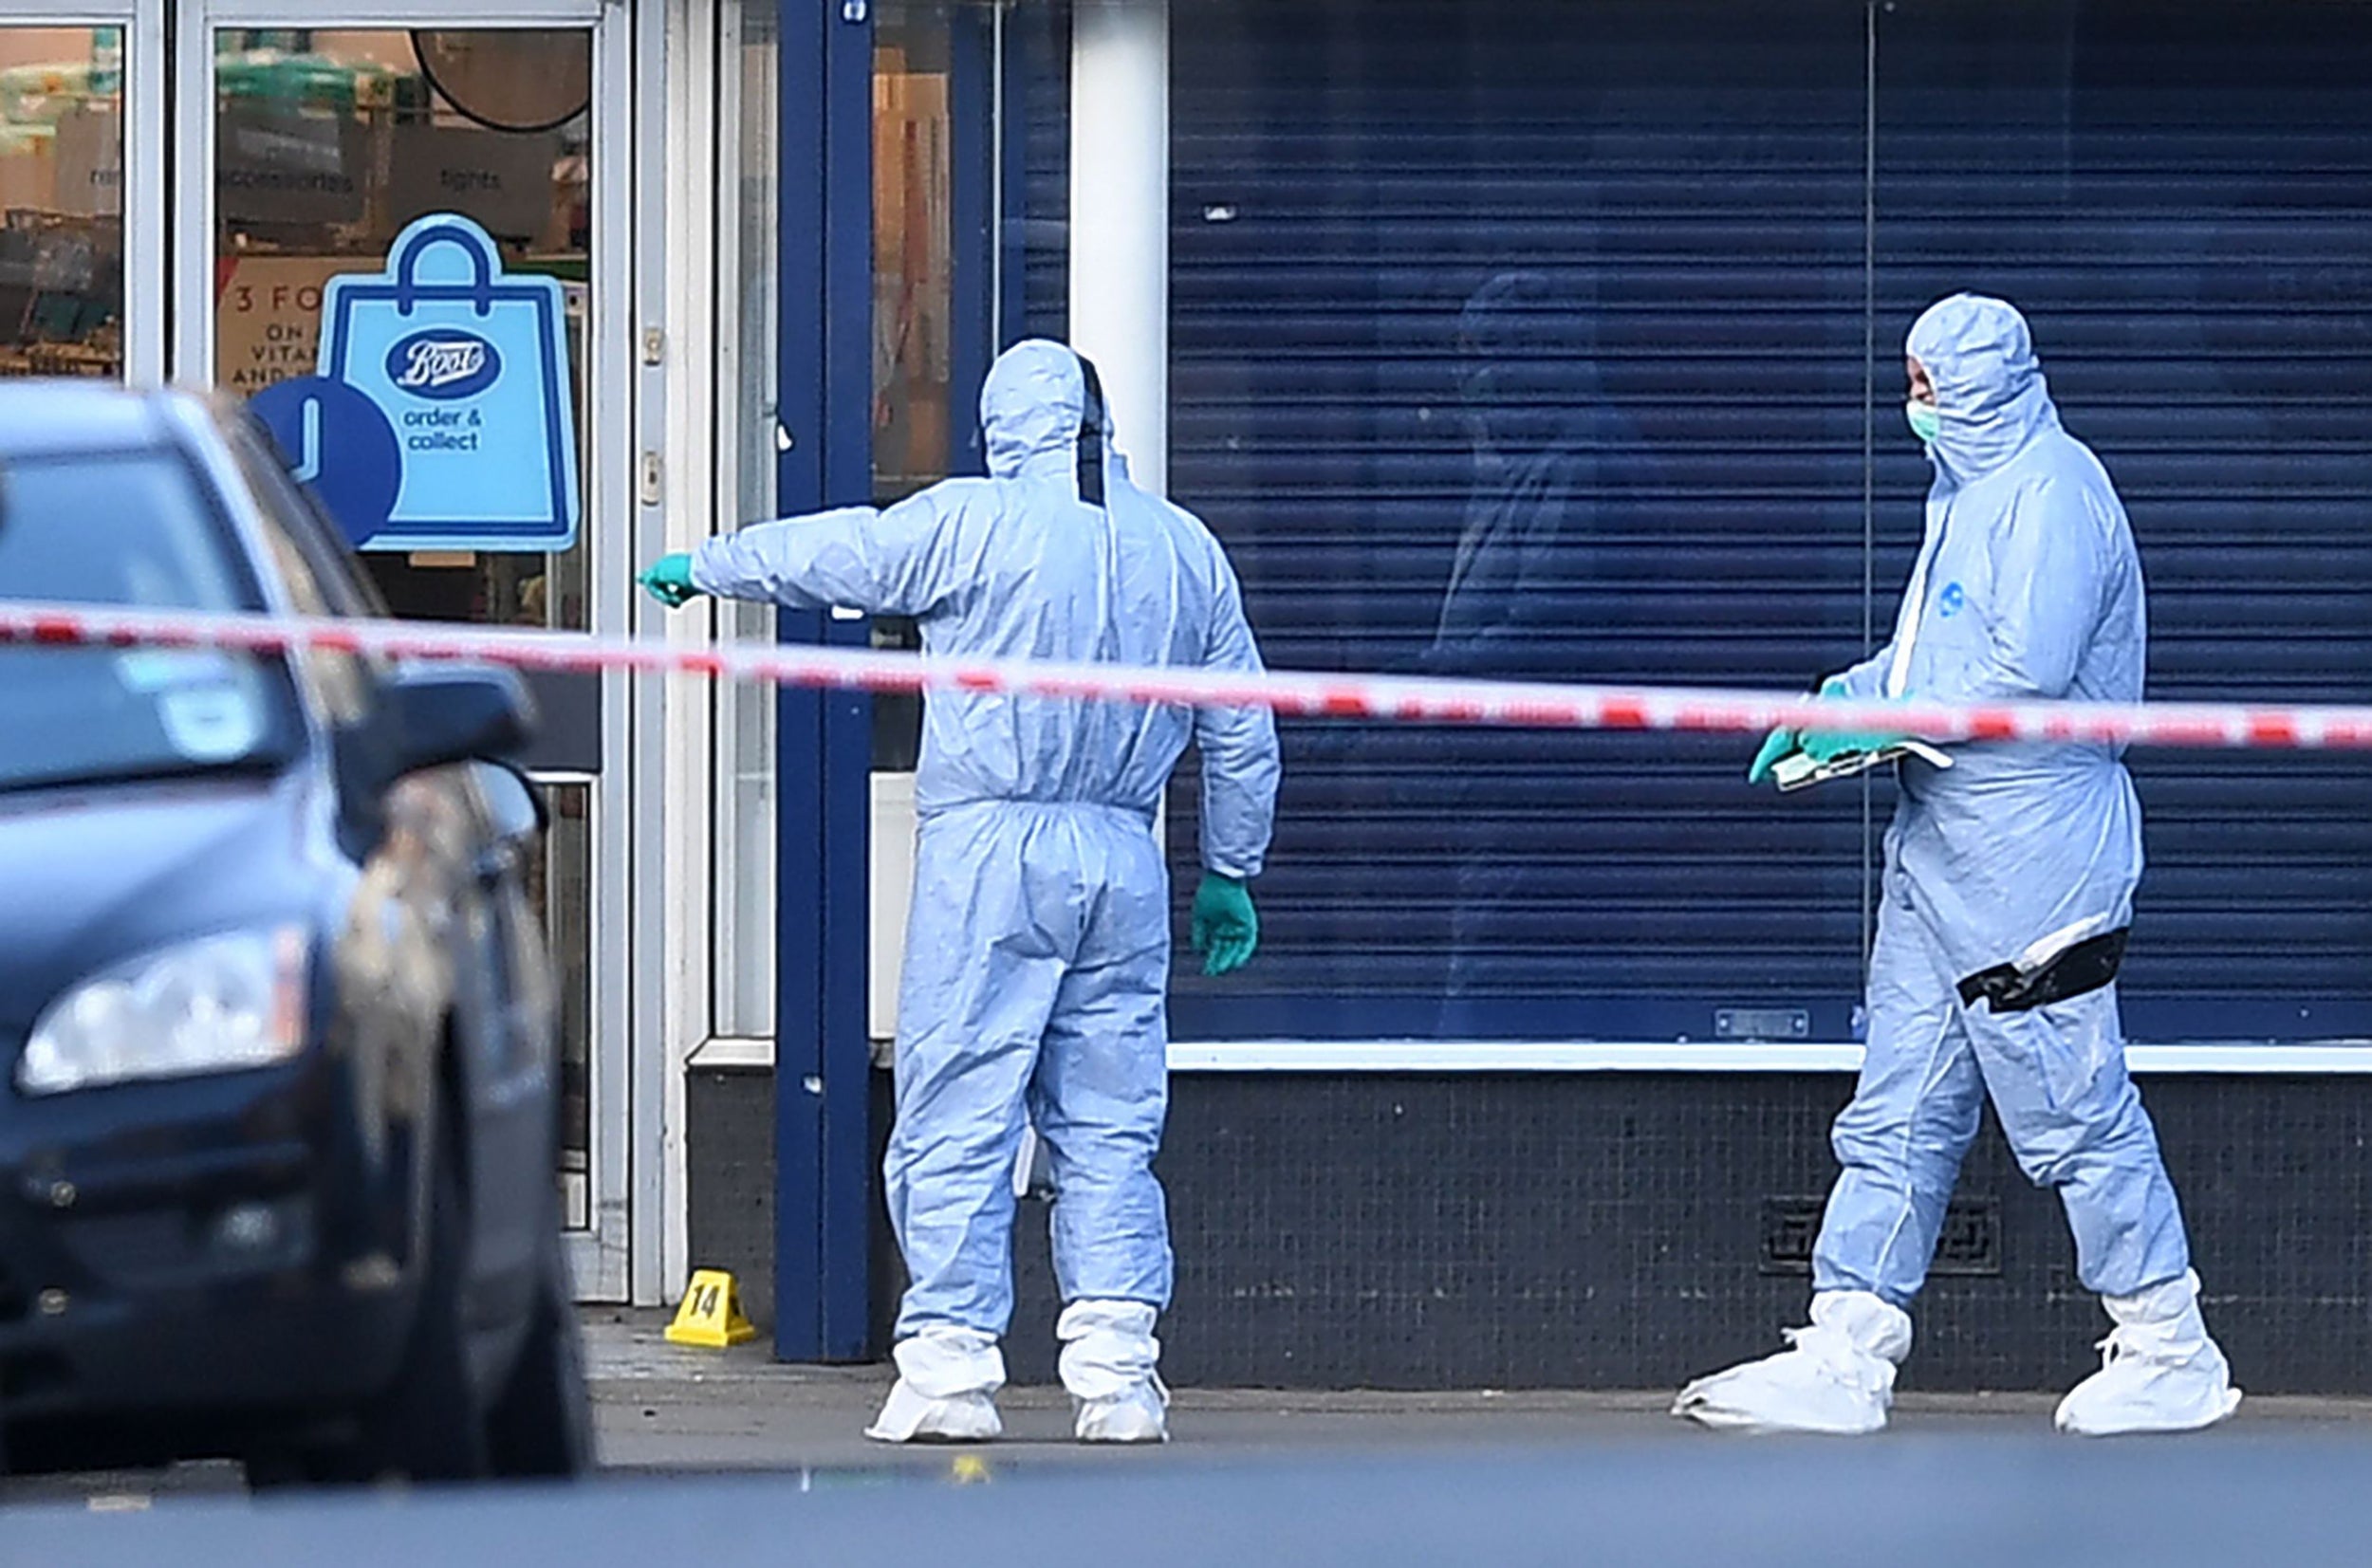 Forensic officers in Streatham earlier this week